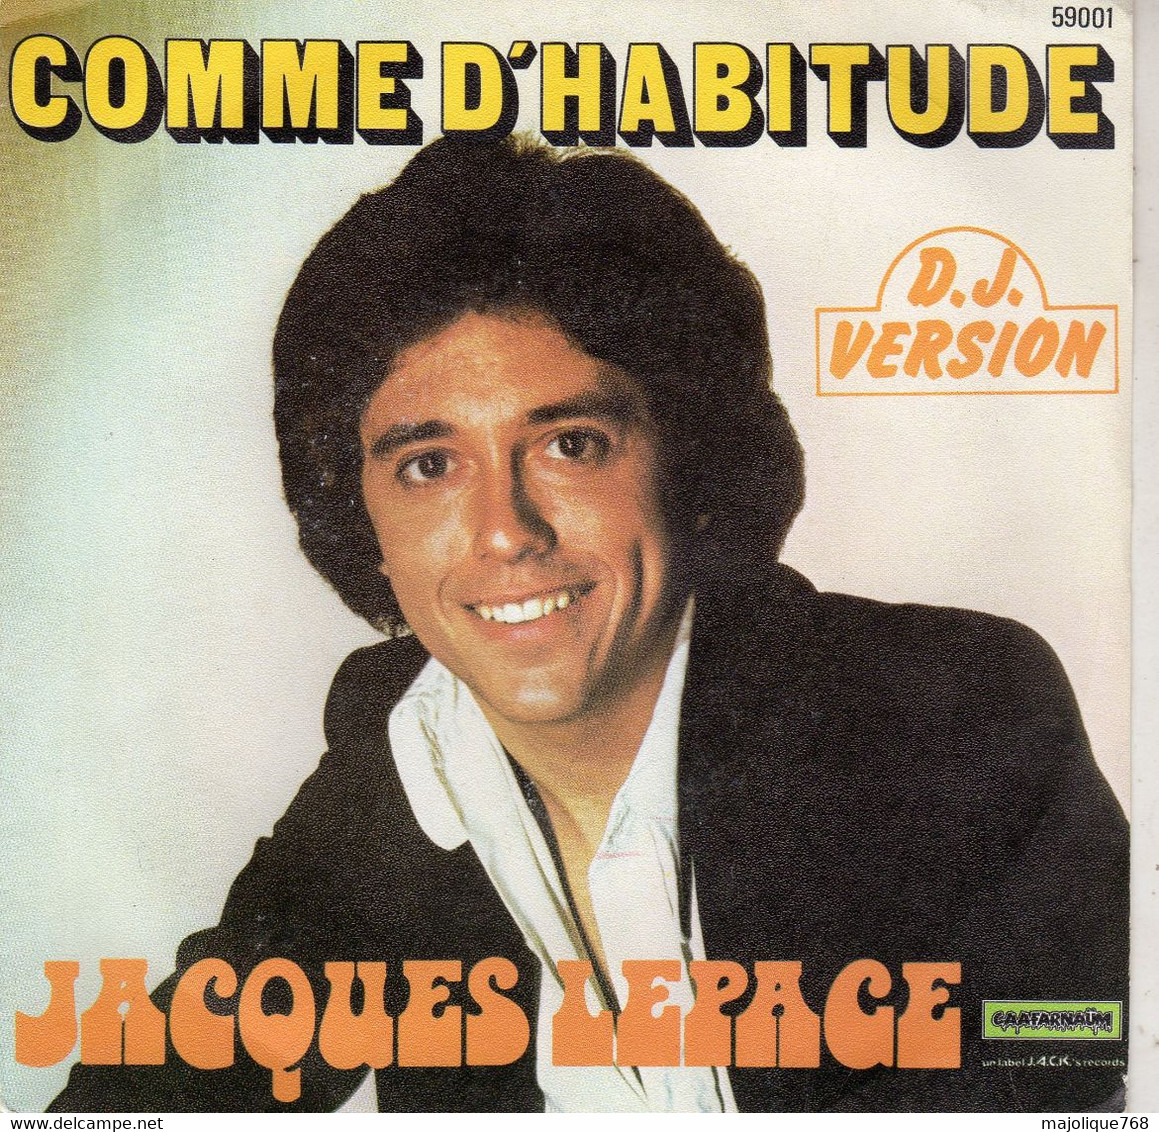 Disque De Jacques Lepage - Comme D'habitude ( D.J. Version) -  Caafarnaüm 59001 - France 1976 - Soul - R&B